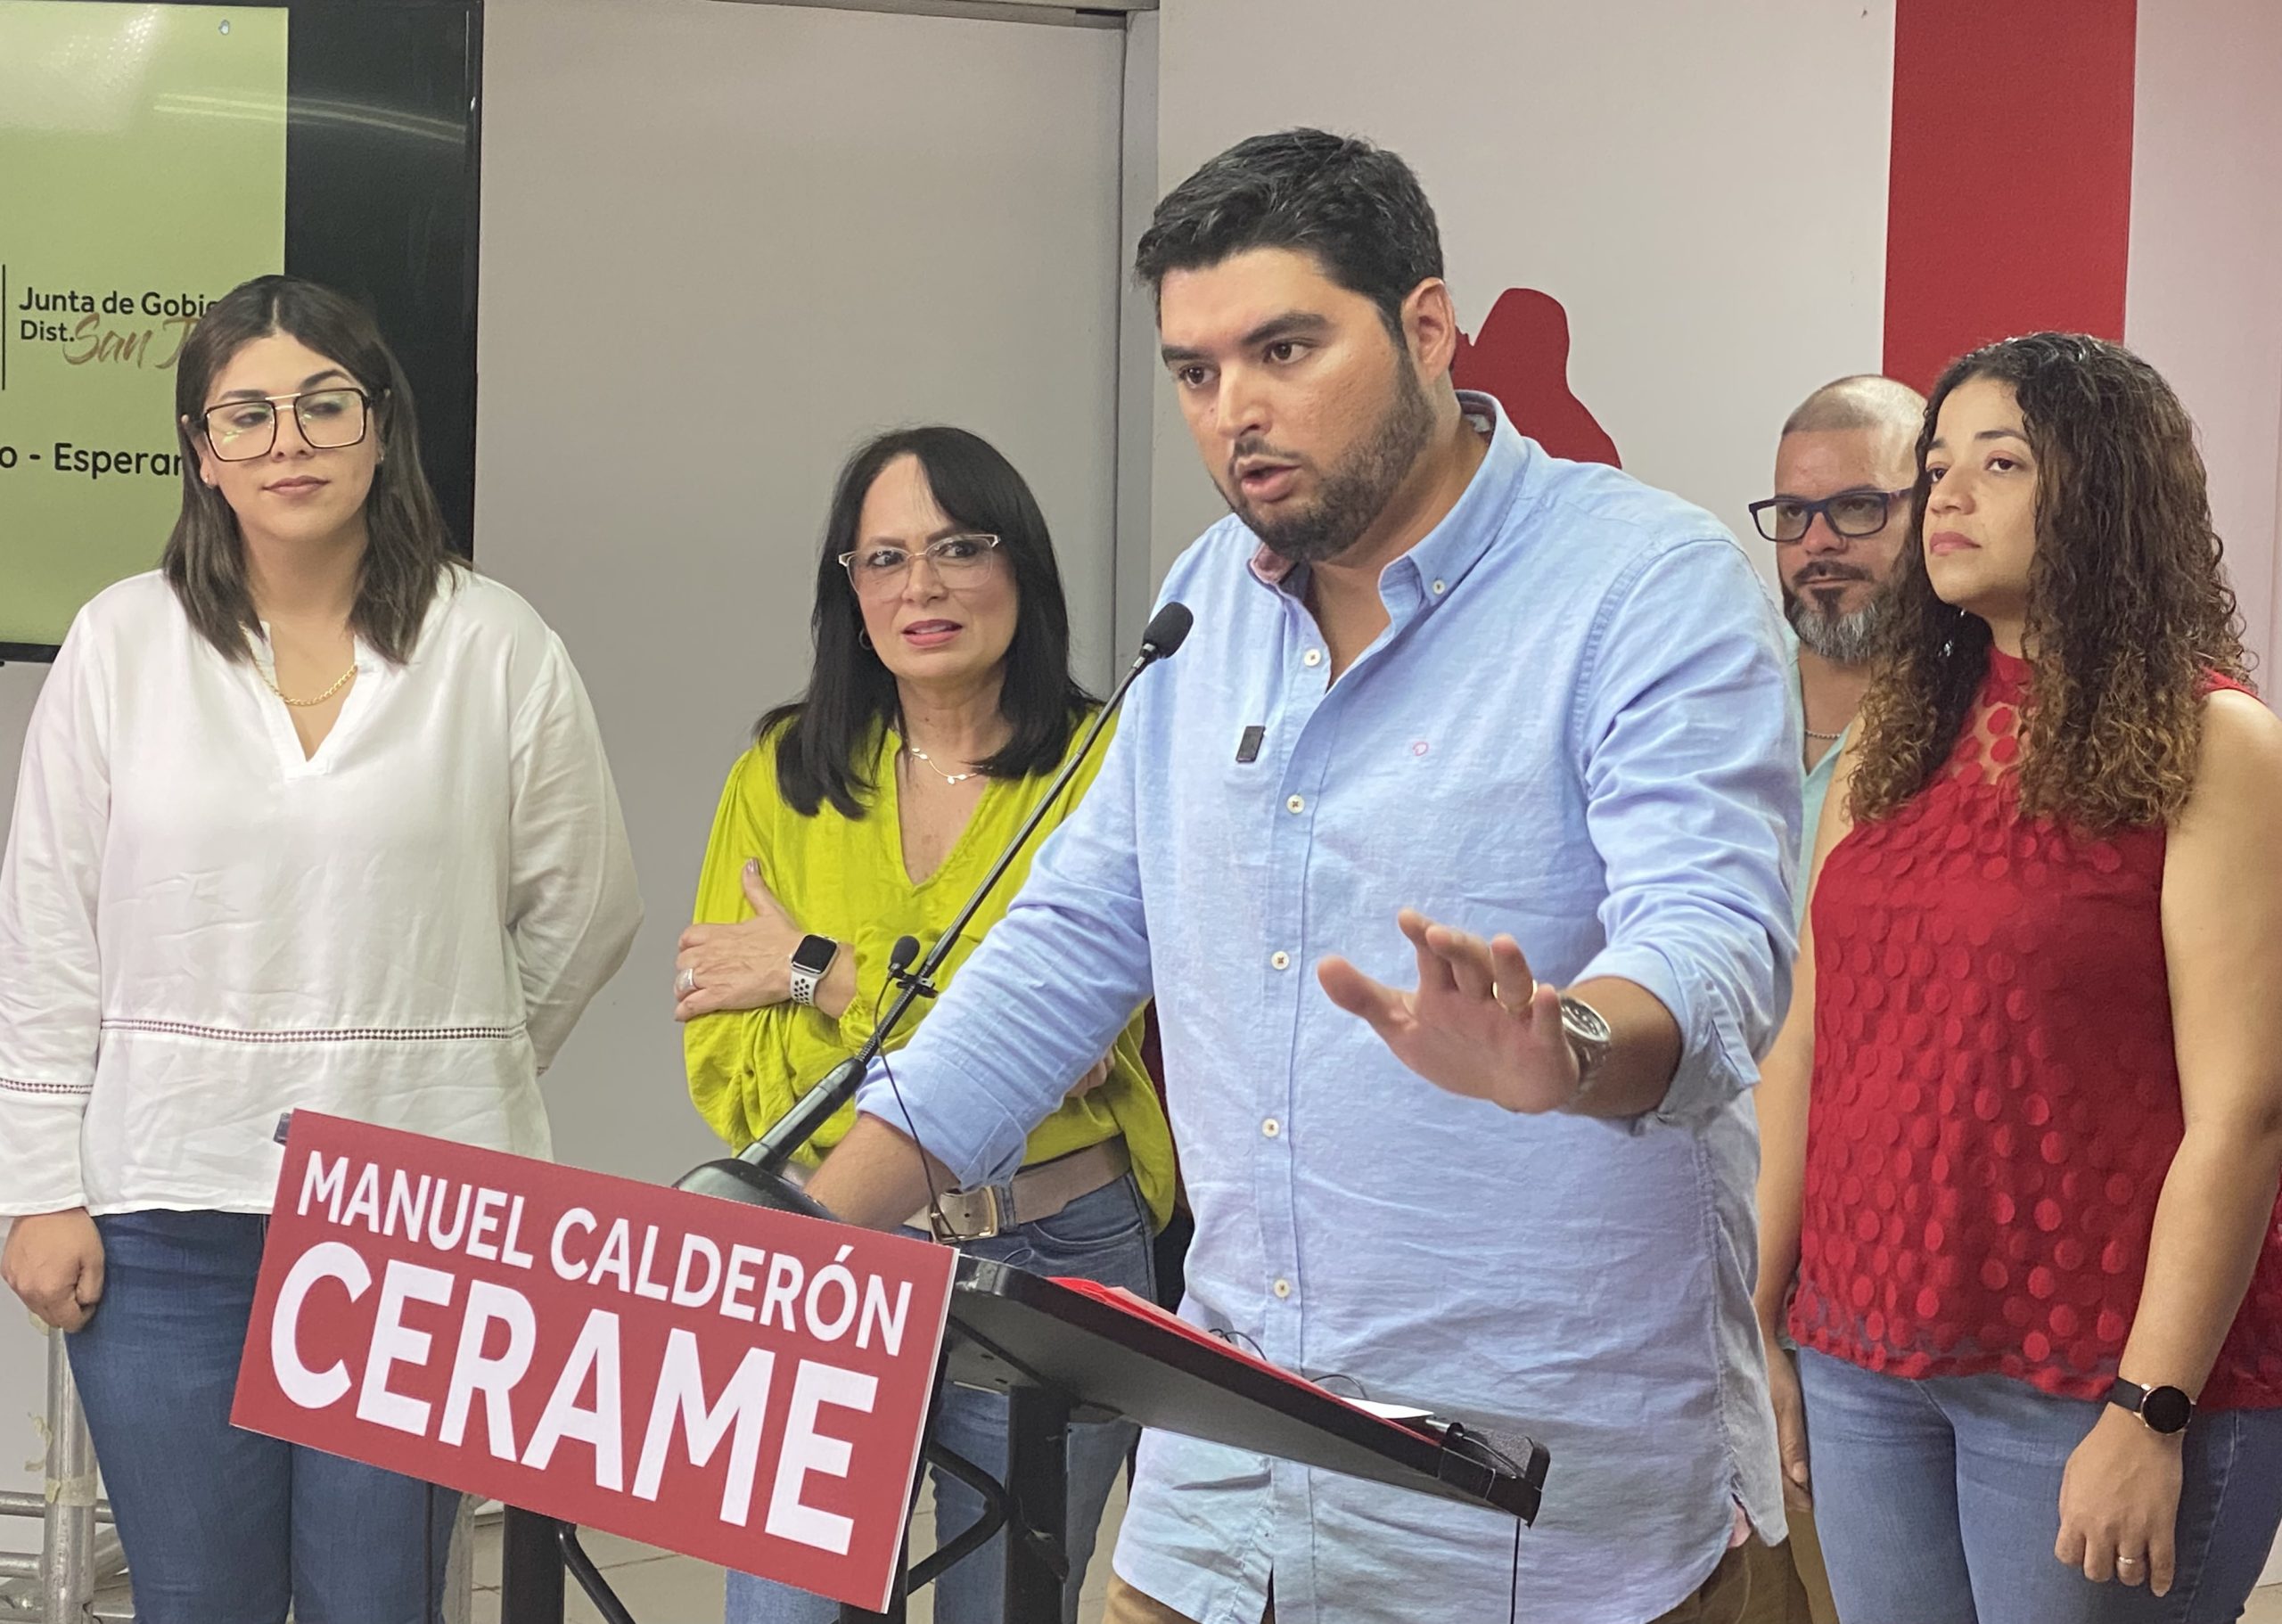 Manuel Calderon Cerame anuncia su candidatura para representar a San Juan en la Junta de Gobierno del Partido Popular Democrático  